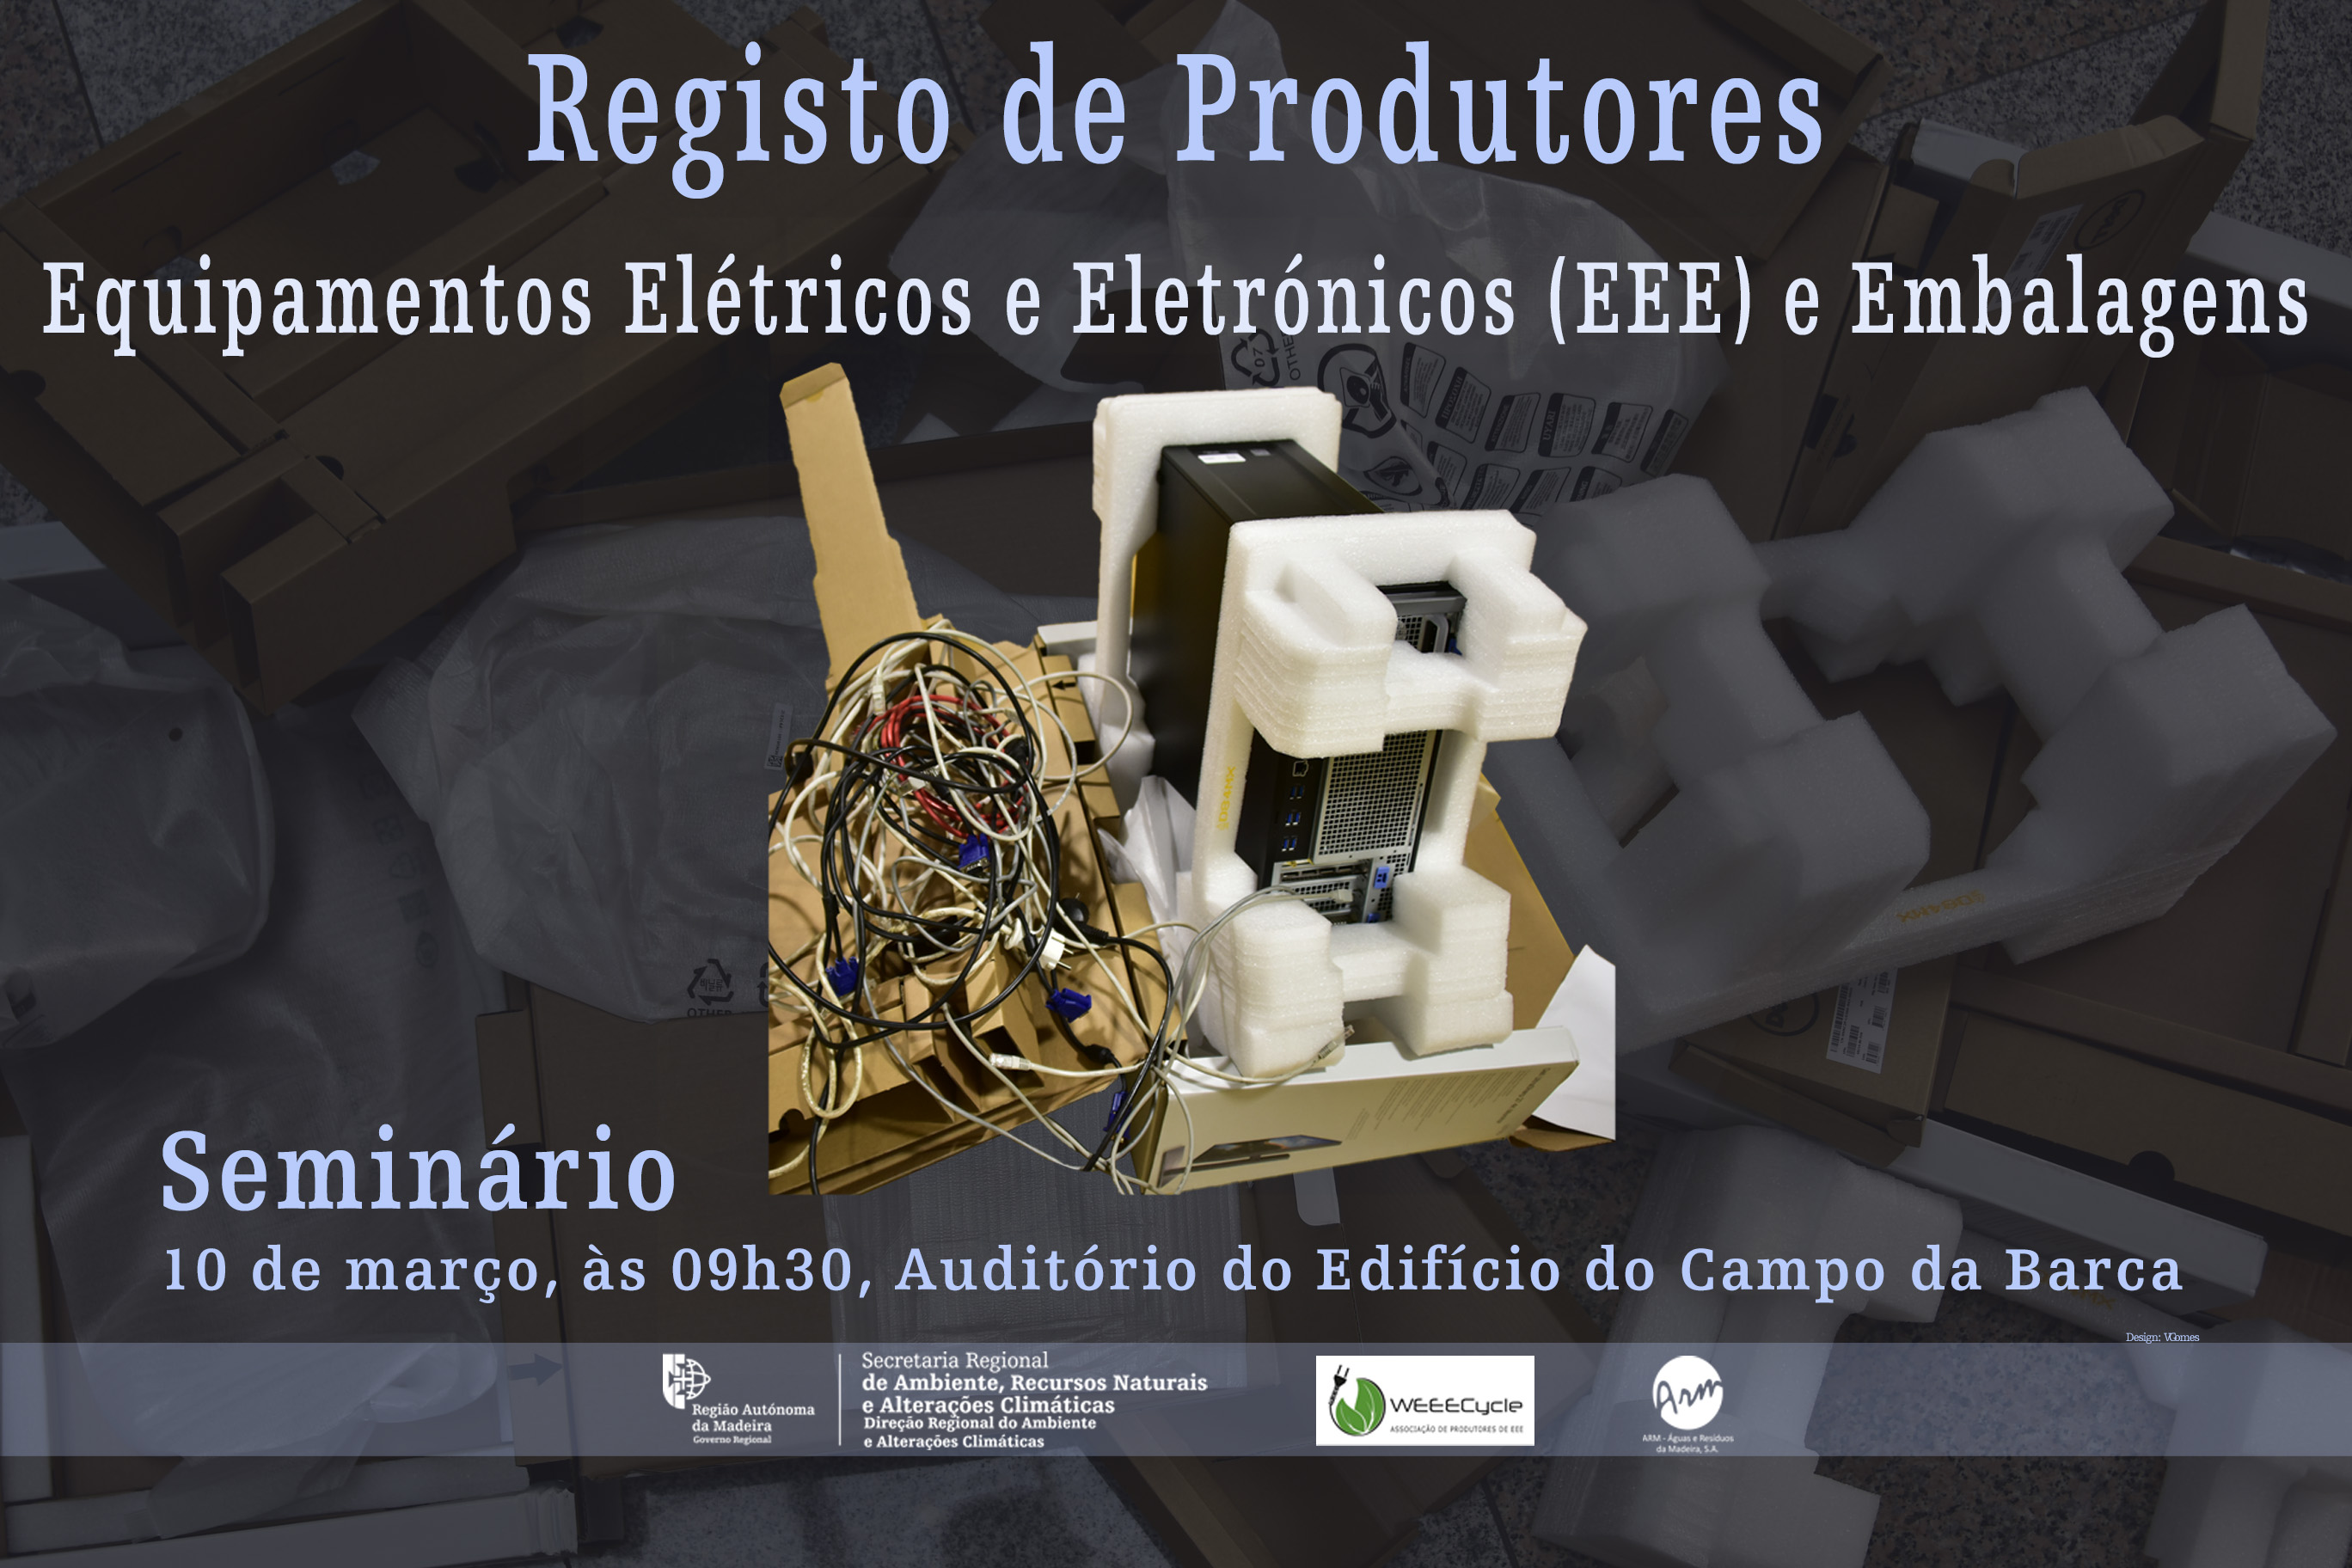 Seminário “Registo de Produtores de Equipamentos Elétricos e Eletrónicos (EEE) e de Embalagens”